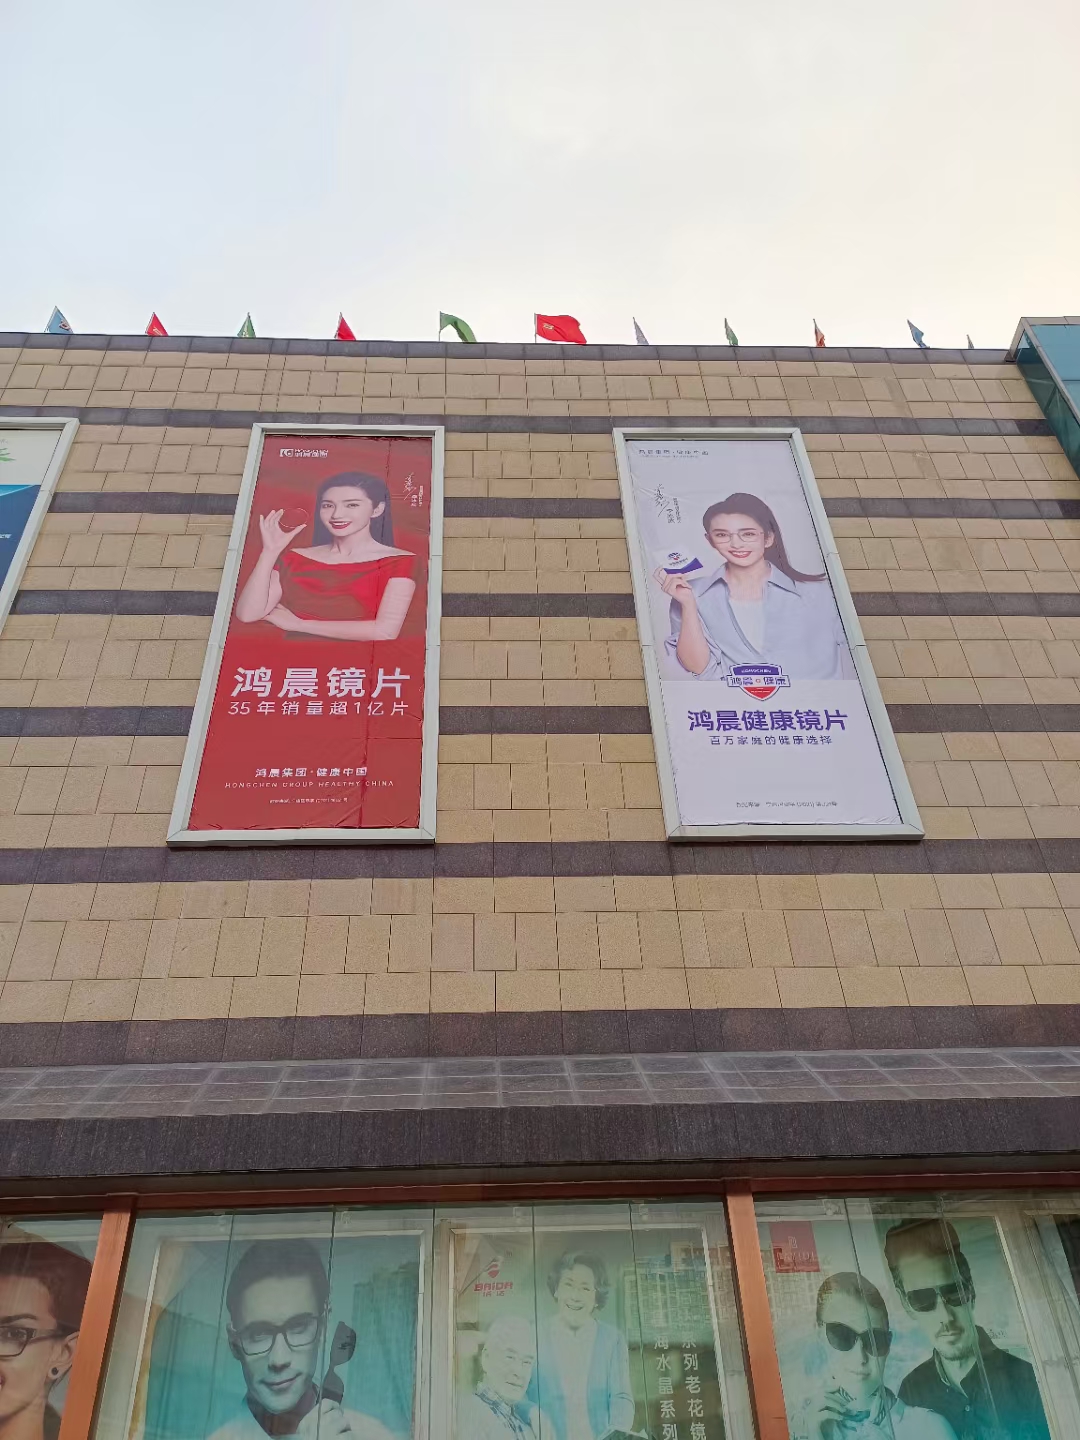 Мы приближаемся!Новая реклама на оптическом рынке города Чжэнчжоу